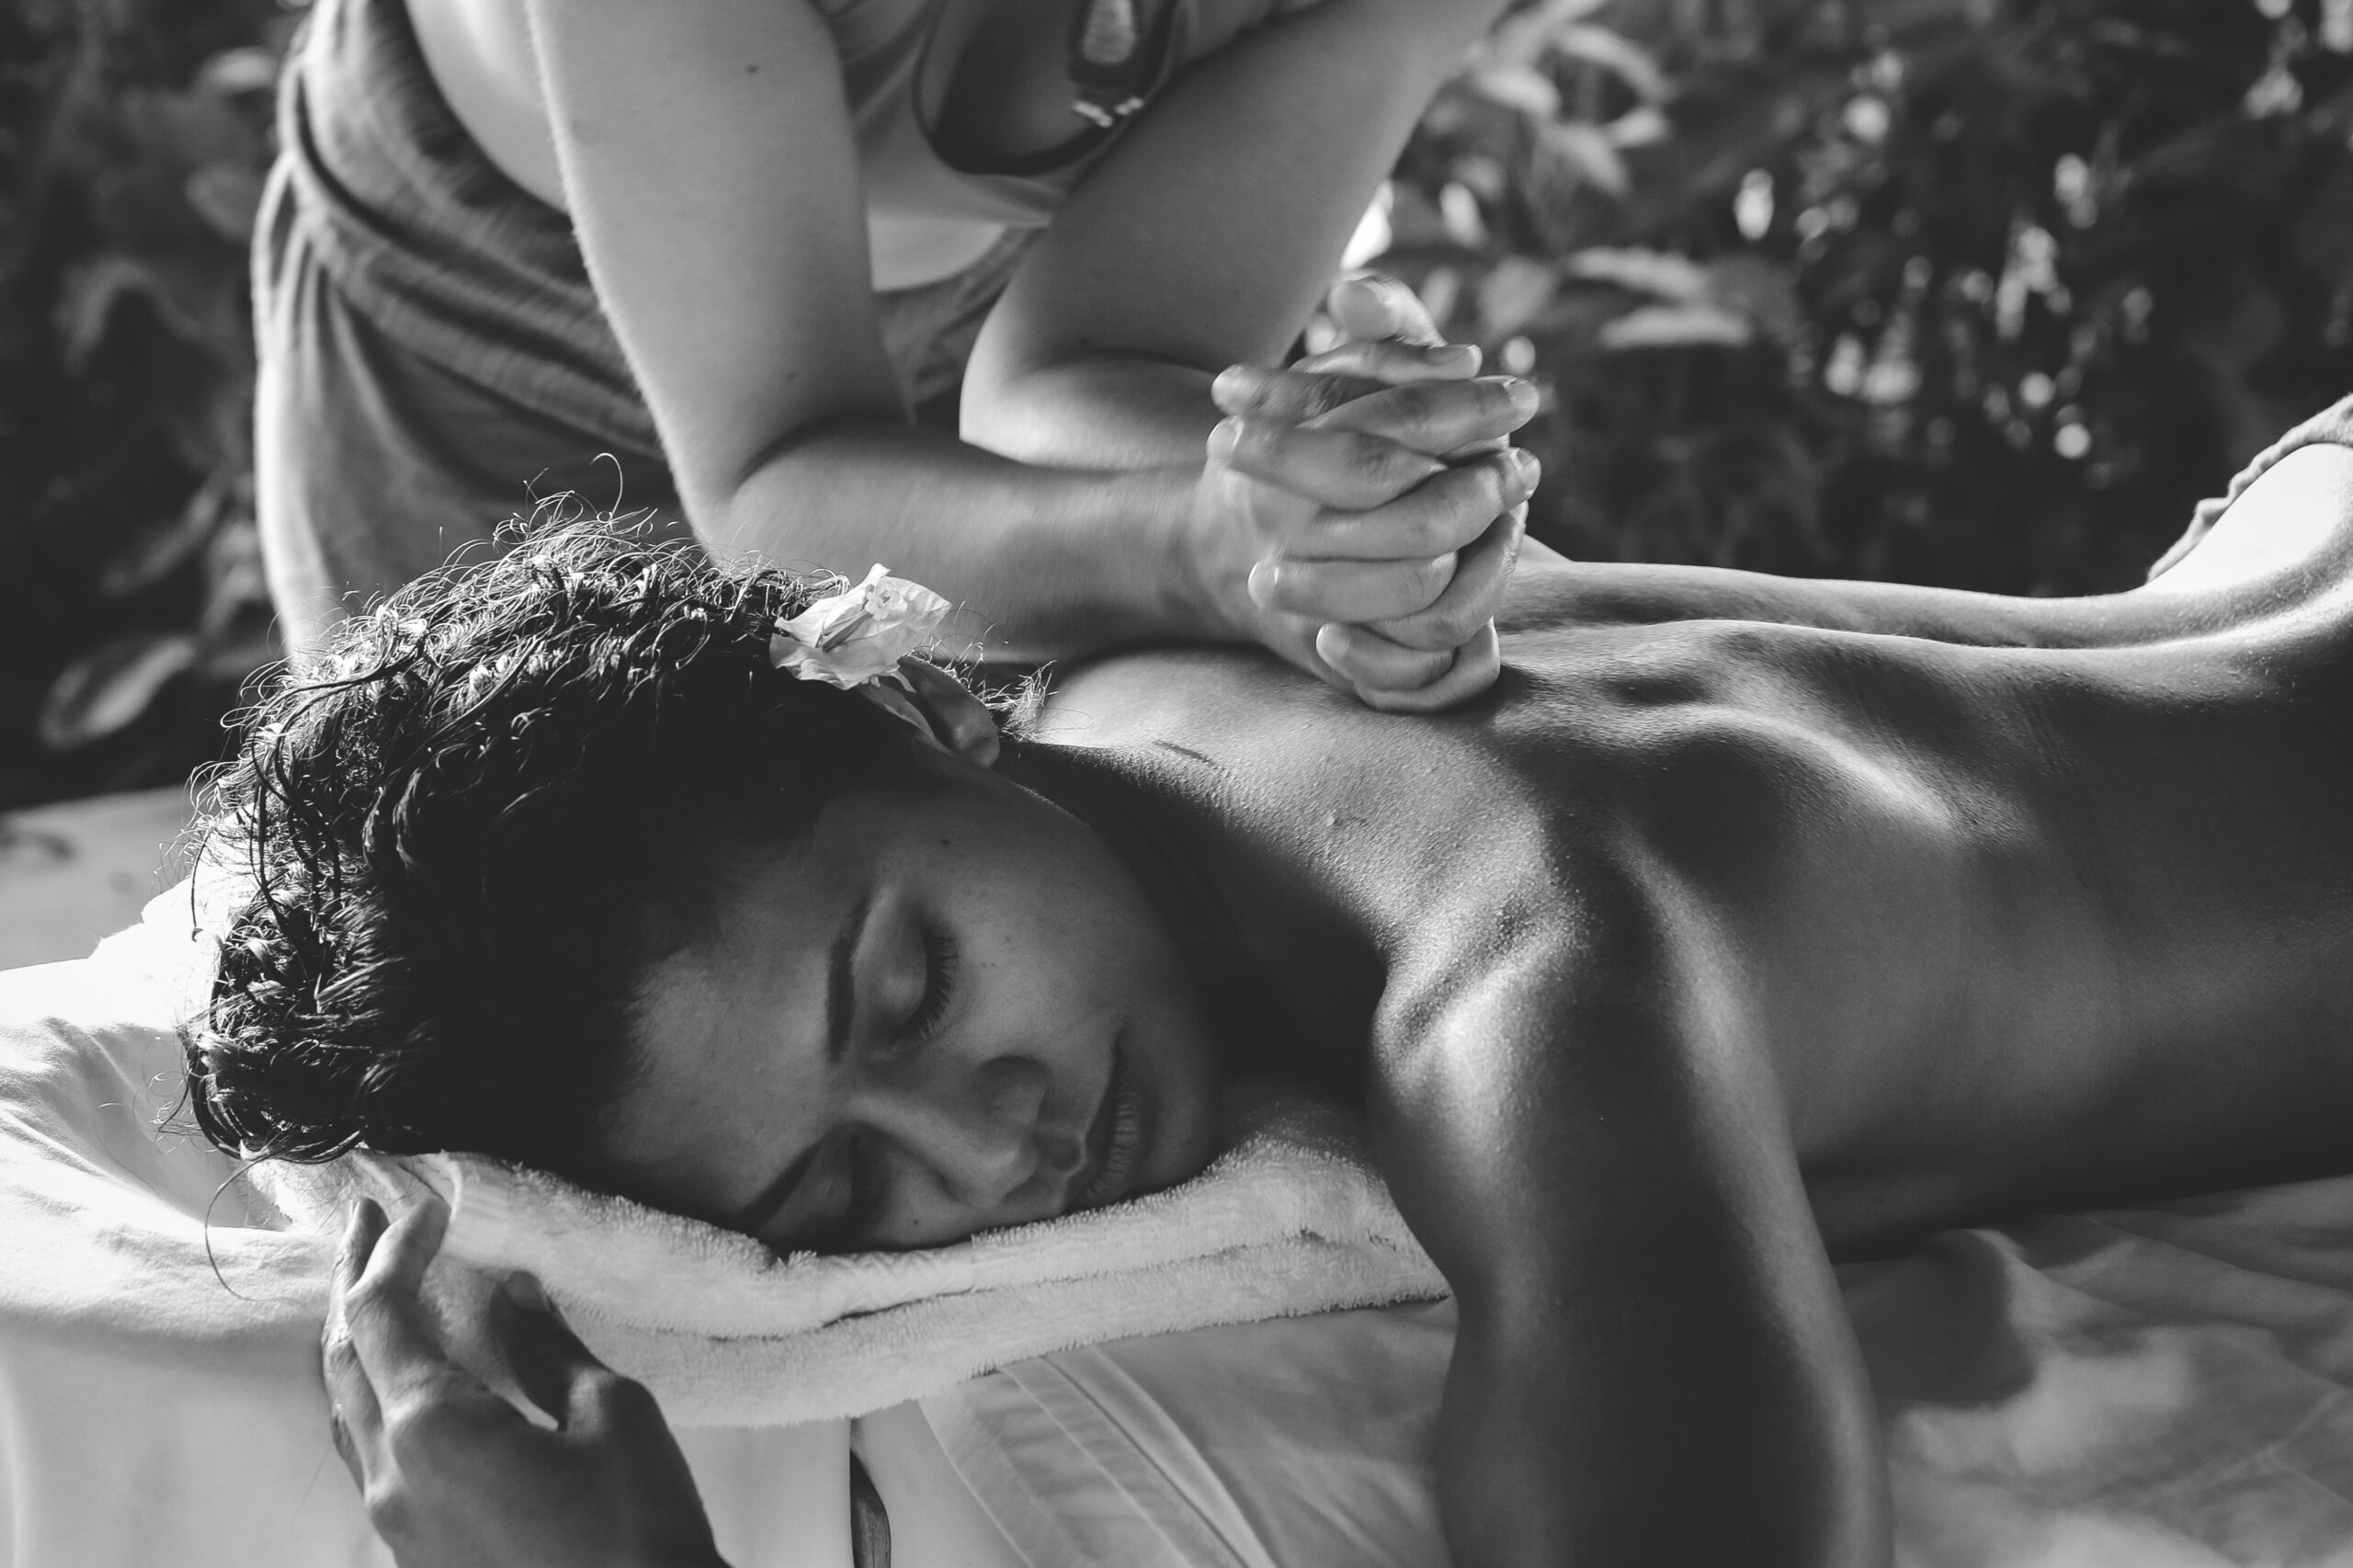 profitez d'un moment de détente en couple avec un massage duo relaxant, une expérience unique pour se ressourcer ensemble.